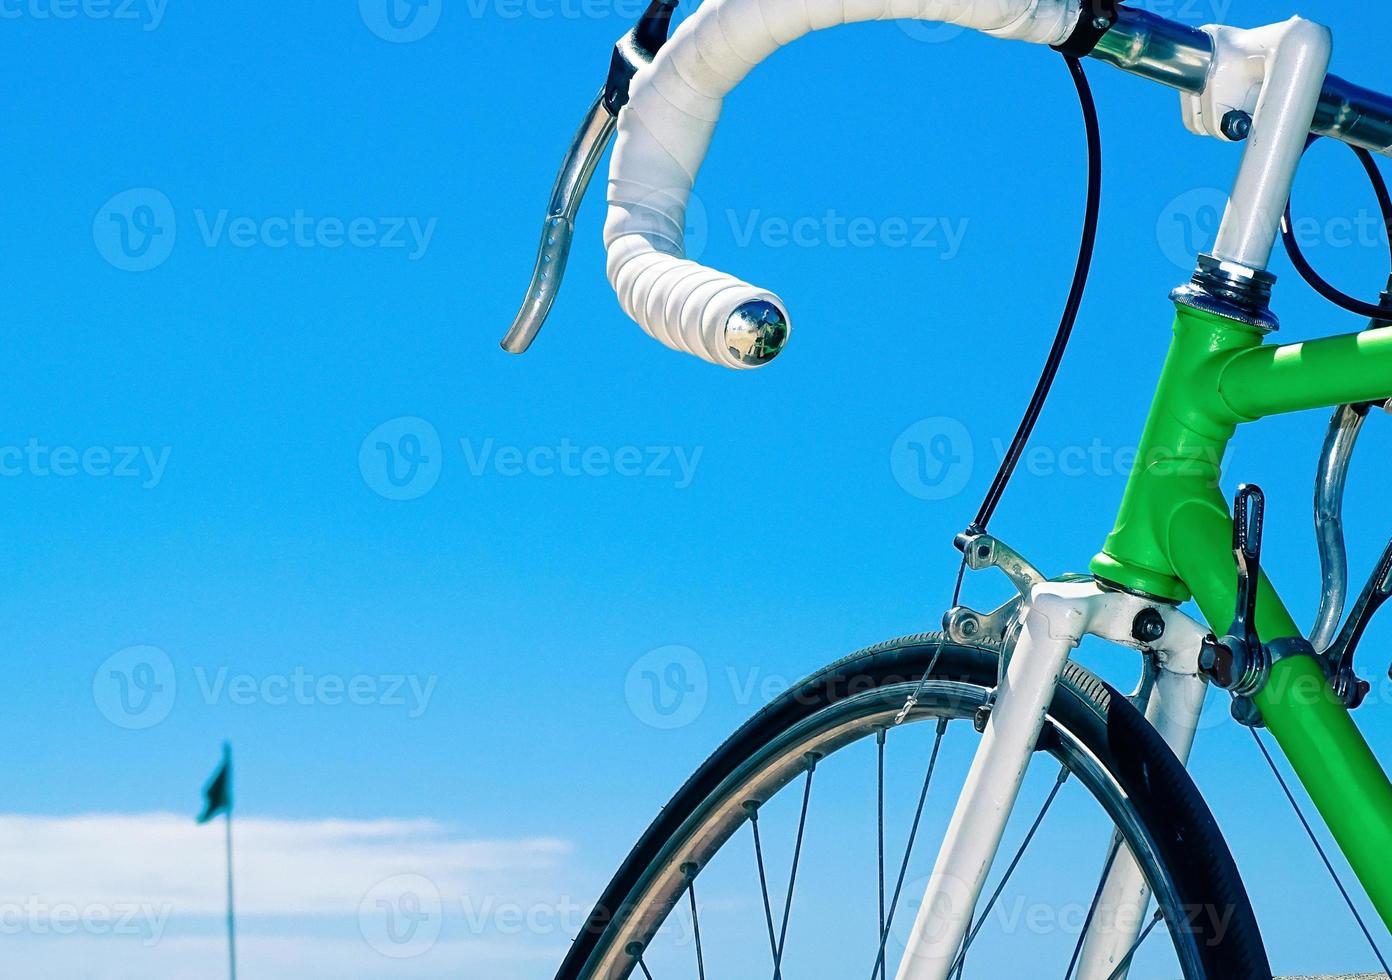 groene racefiets met het witte stuur op een blauwe hemelachtergrond foto